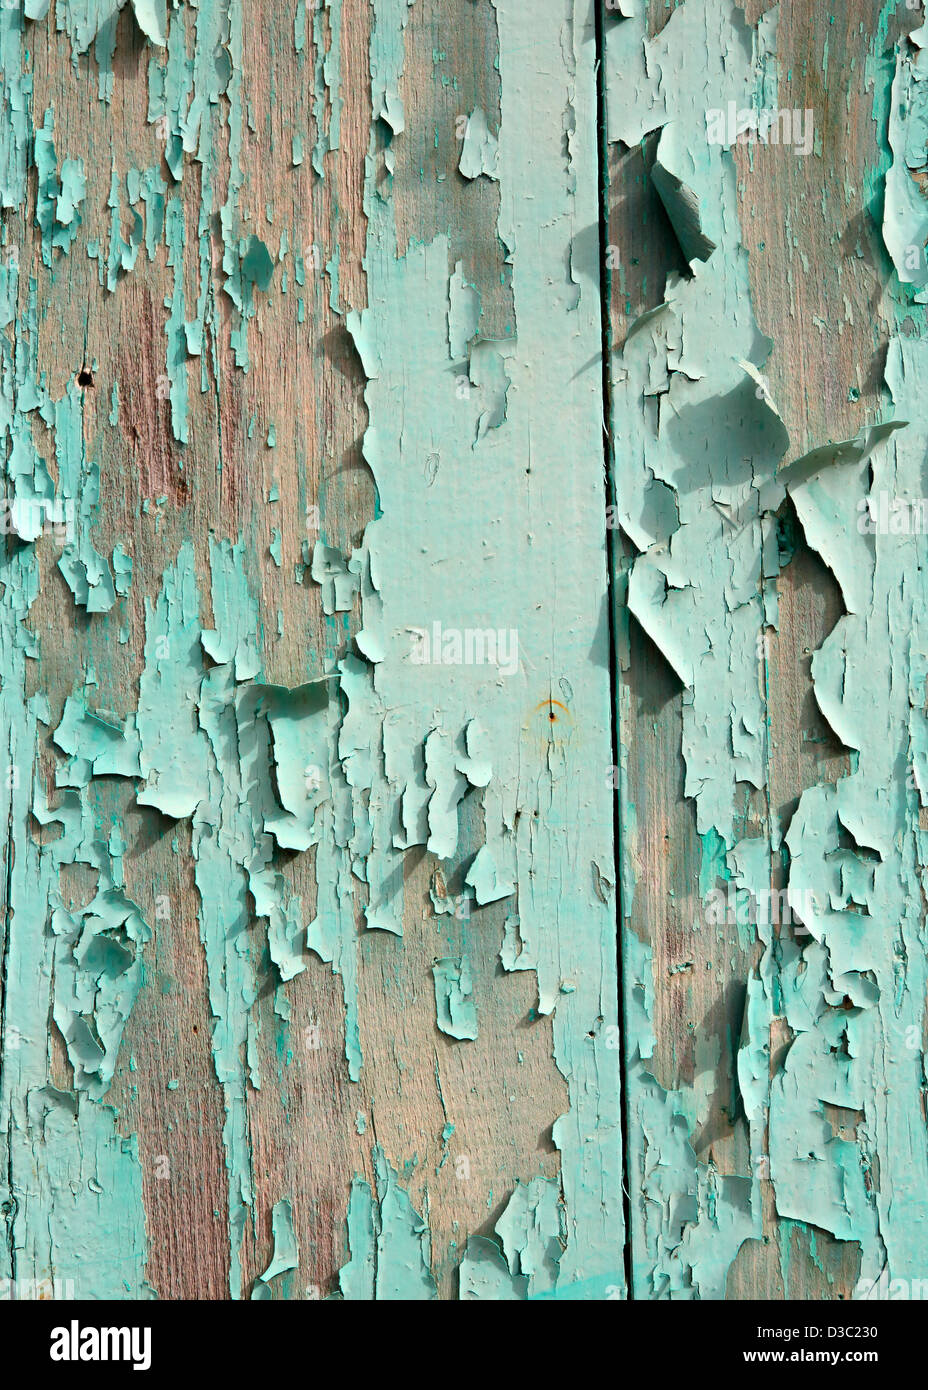 La pintura descarapelada turquesa sobre fondo de madera Foto de stock